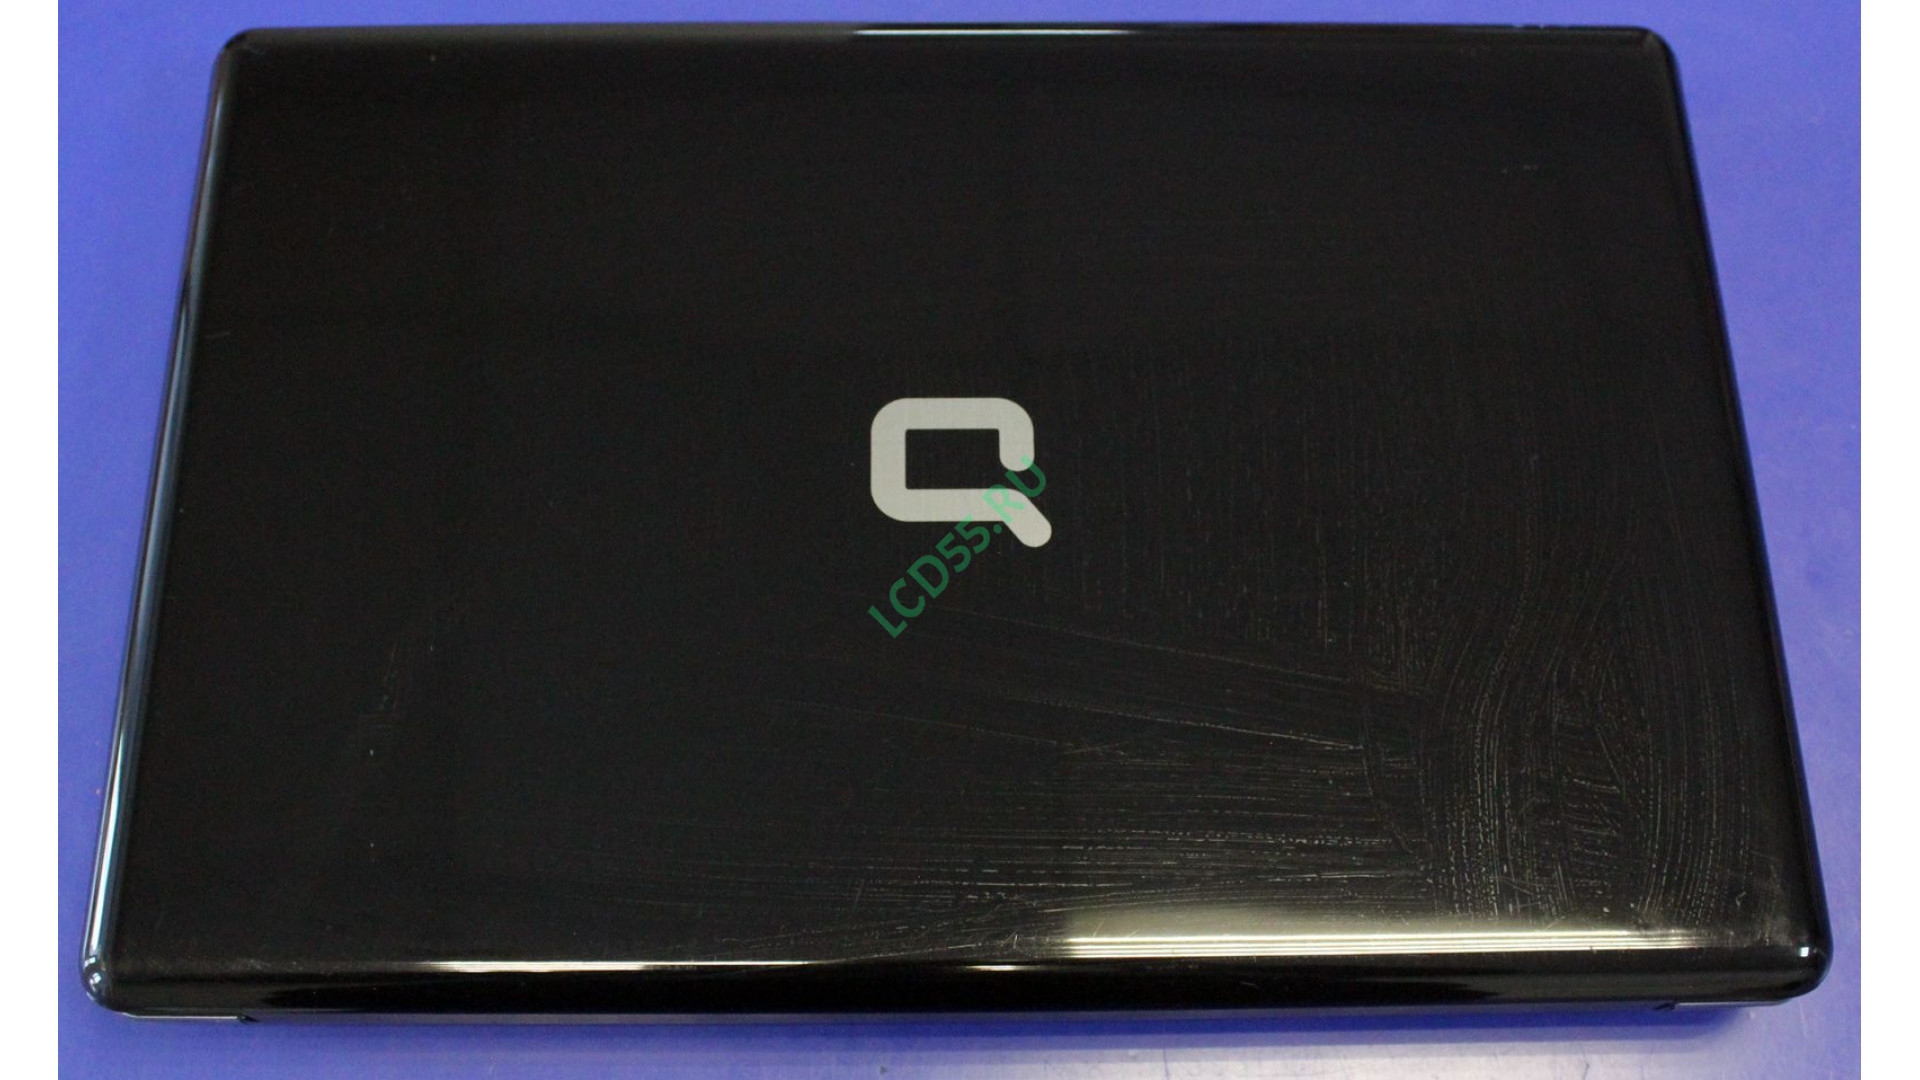 Ноутбук Compaq presario CQ61-332er б/у